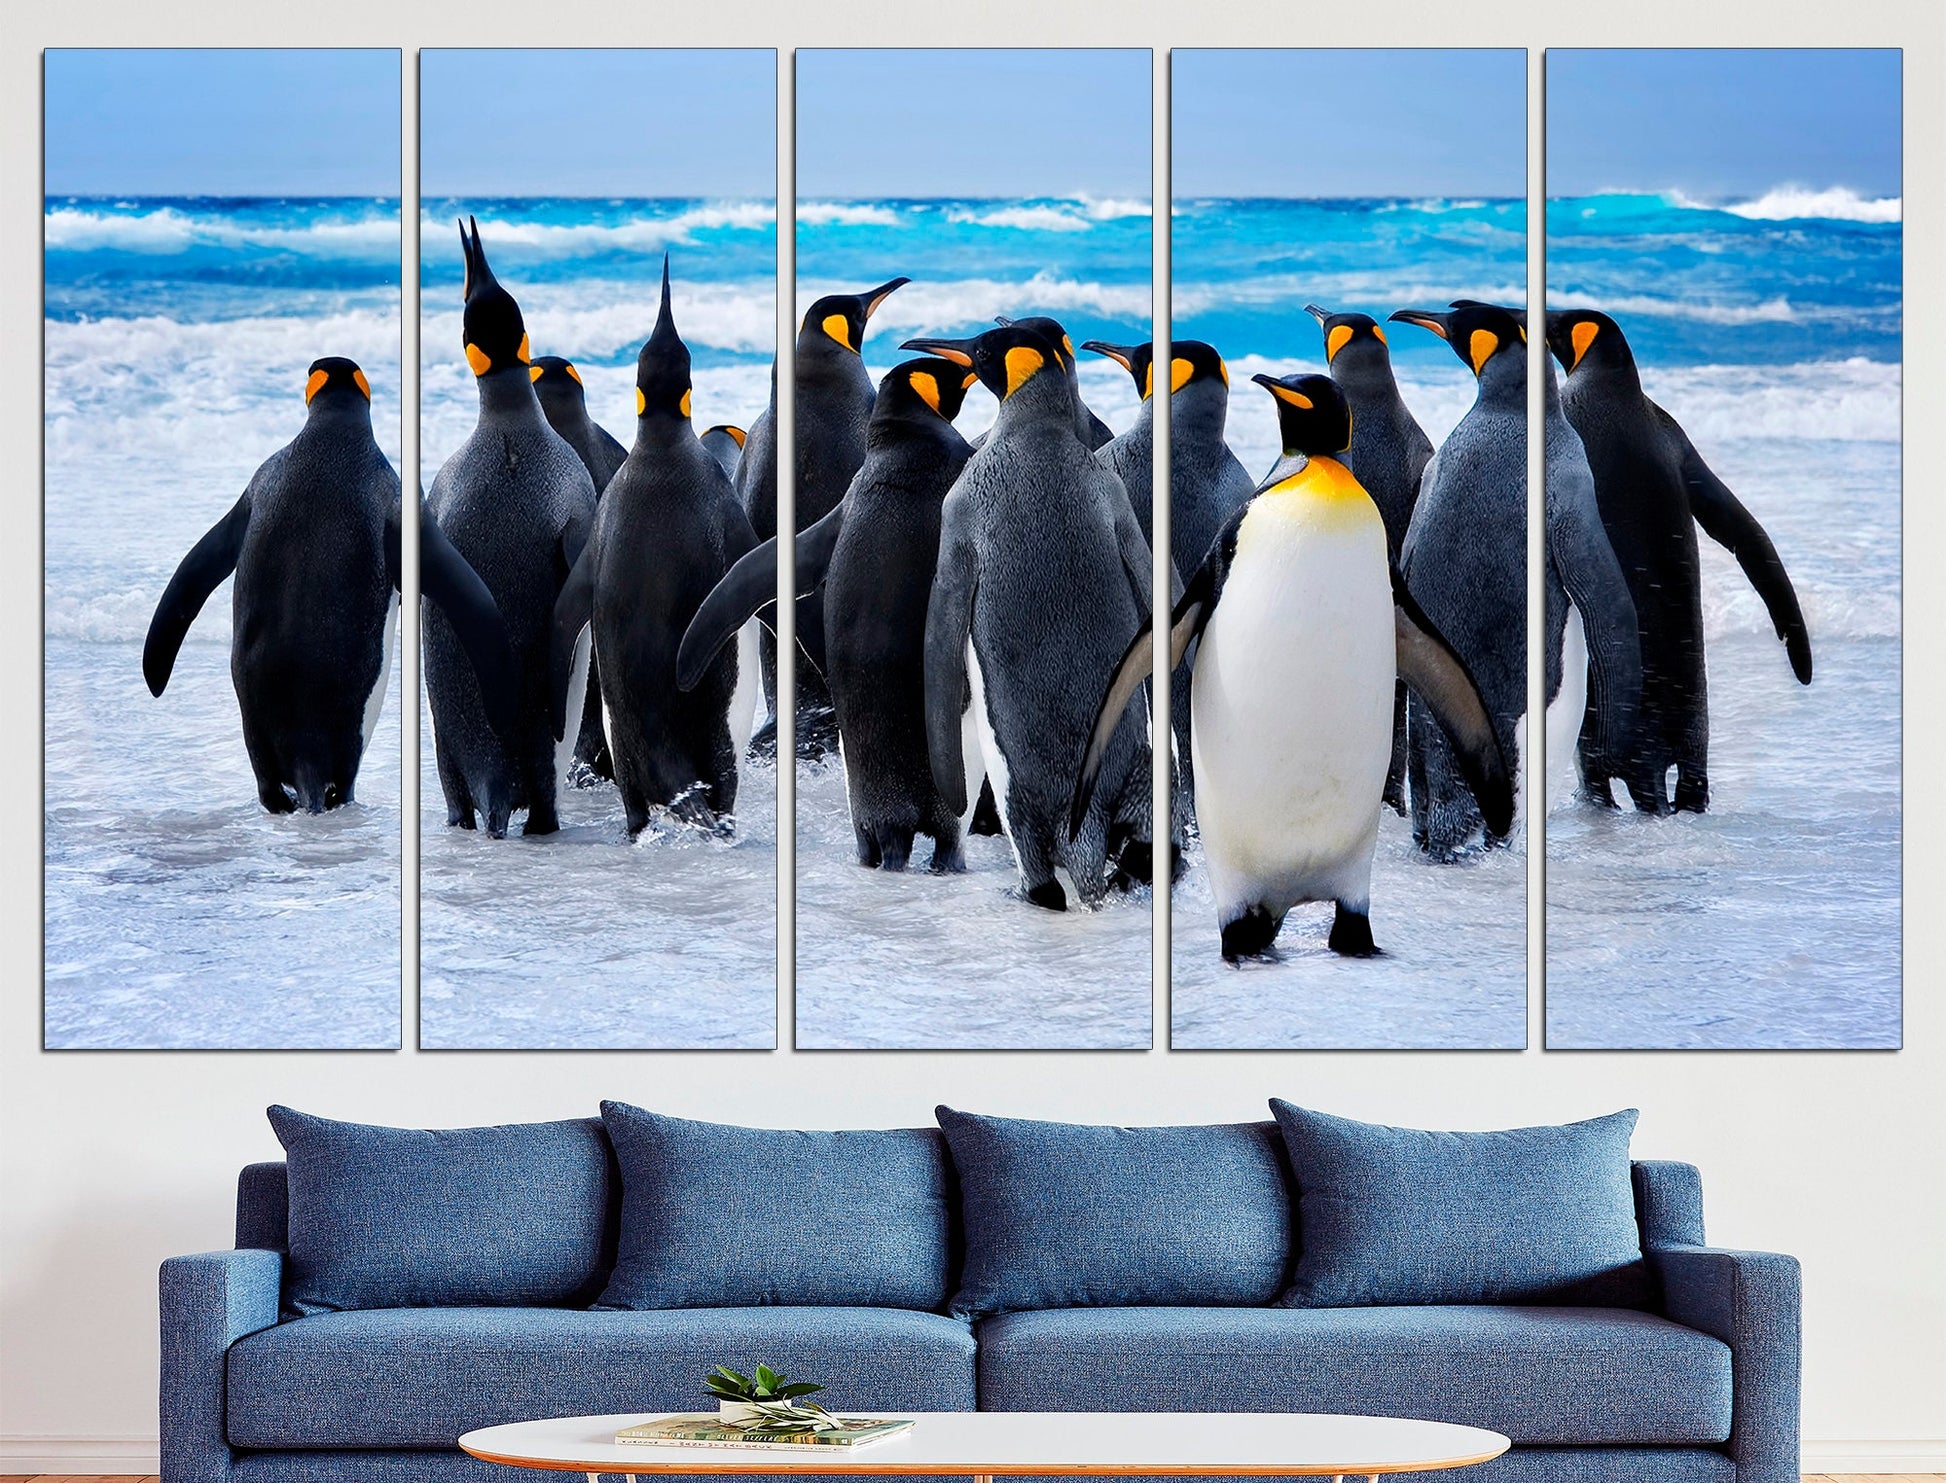 Penguin Print Penguin Wall Art Penguin Poster, Penguin Nursery Penguin Gift Penguin Wall Decor